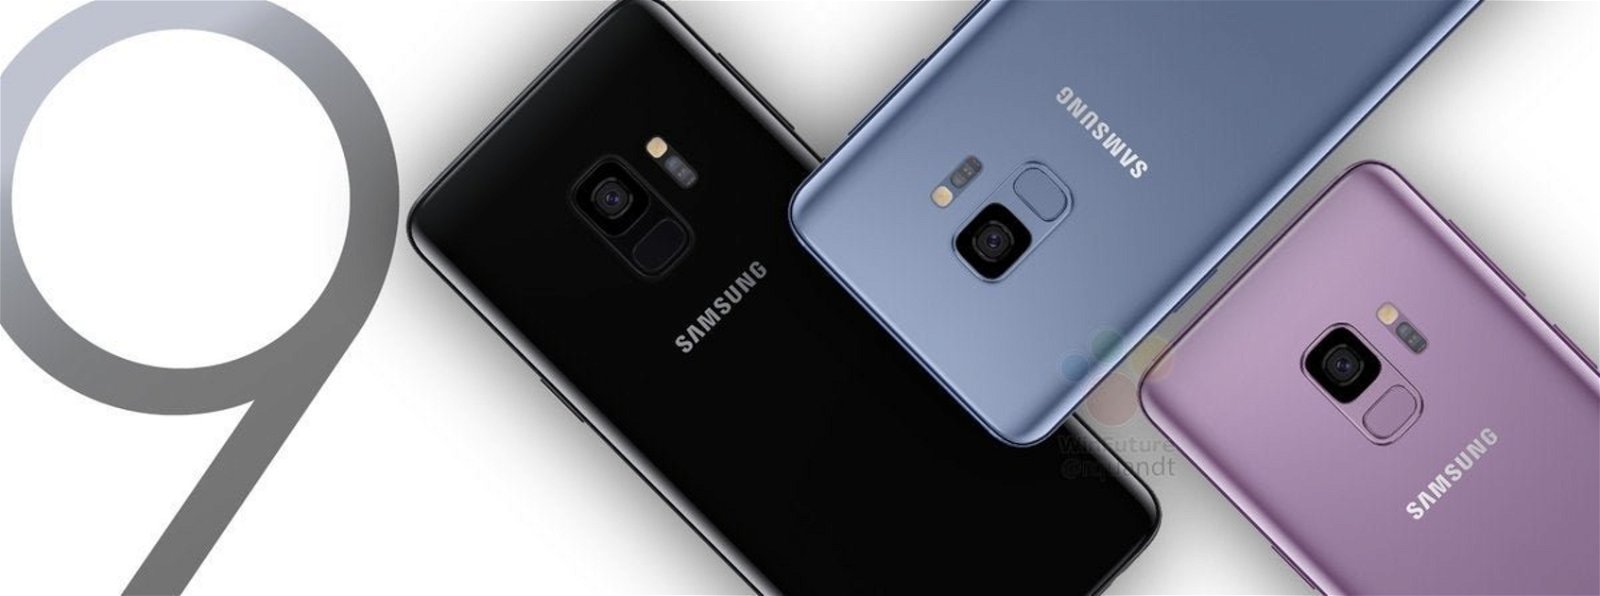 Samsung Galaxy S9 en tres colores